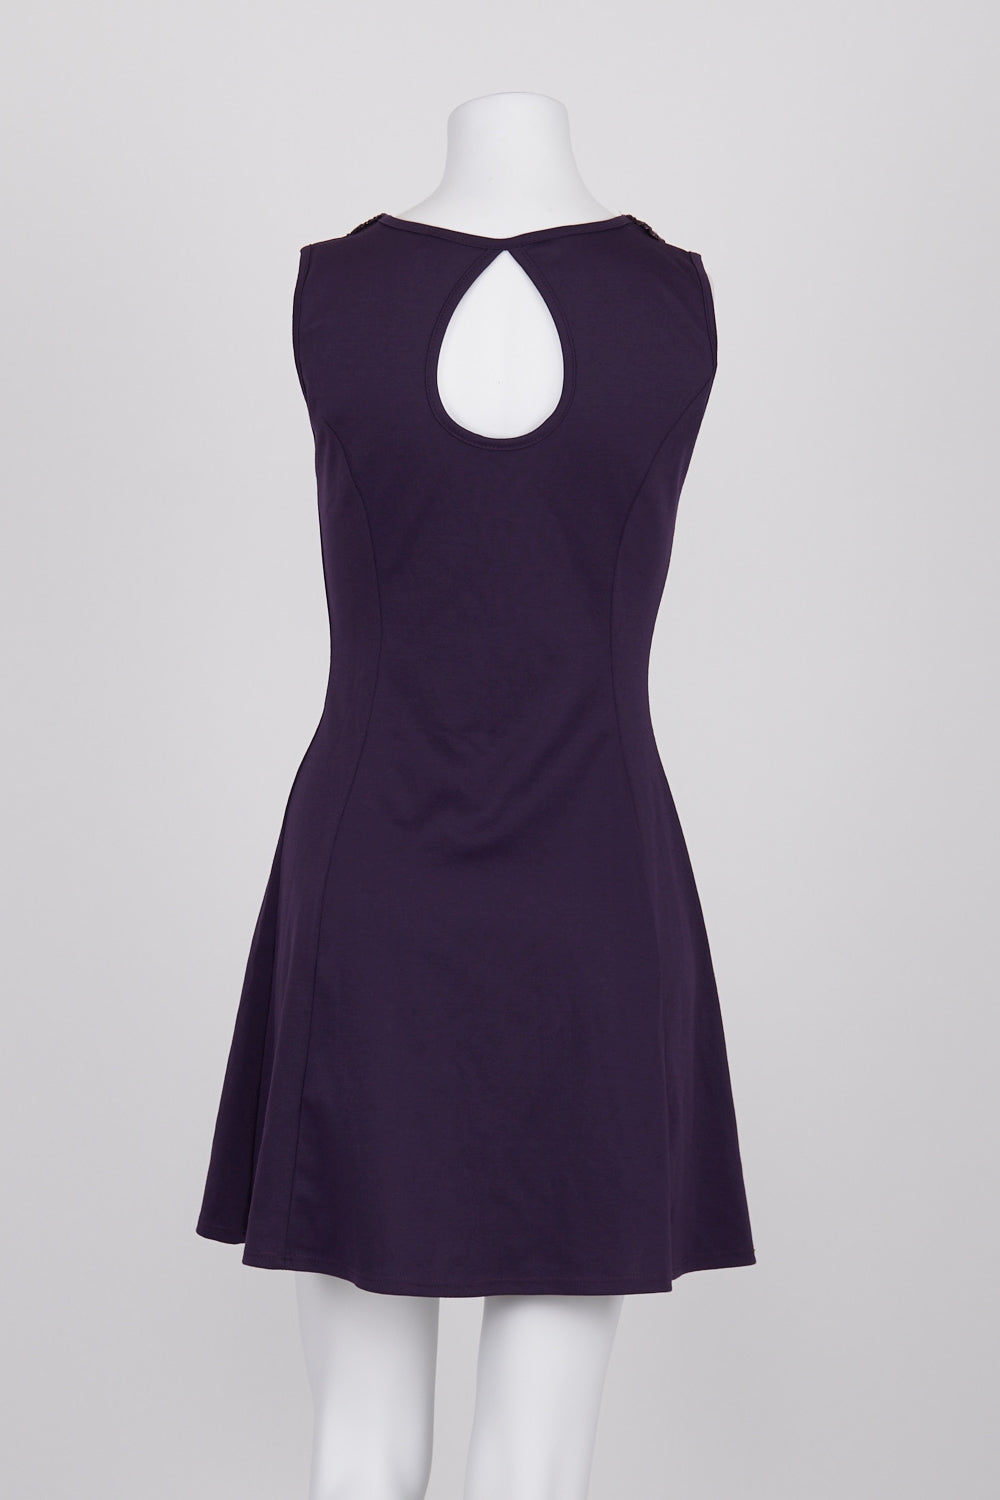 Coii Purple Sequin Detail Dress S